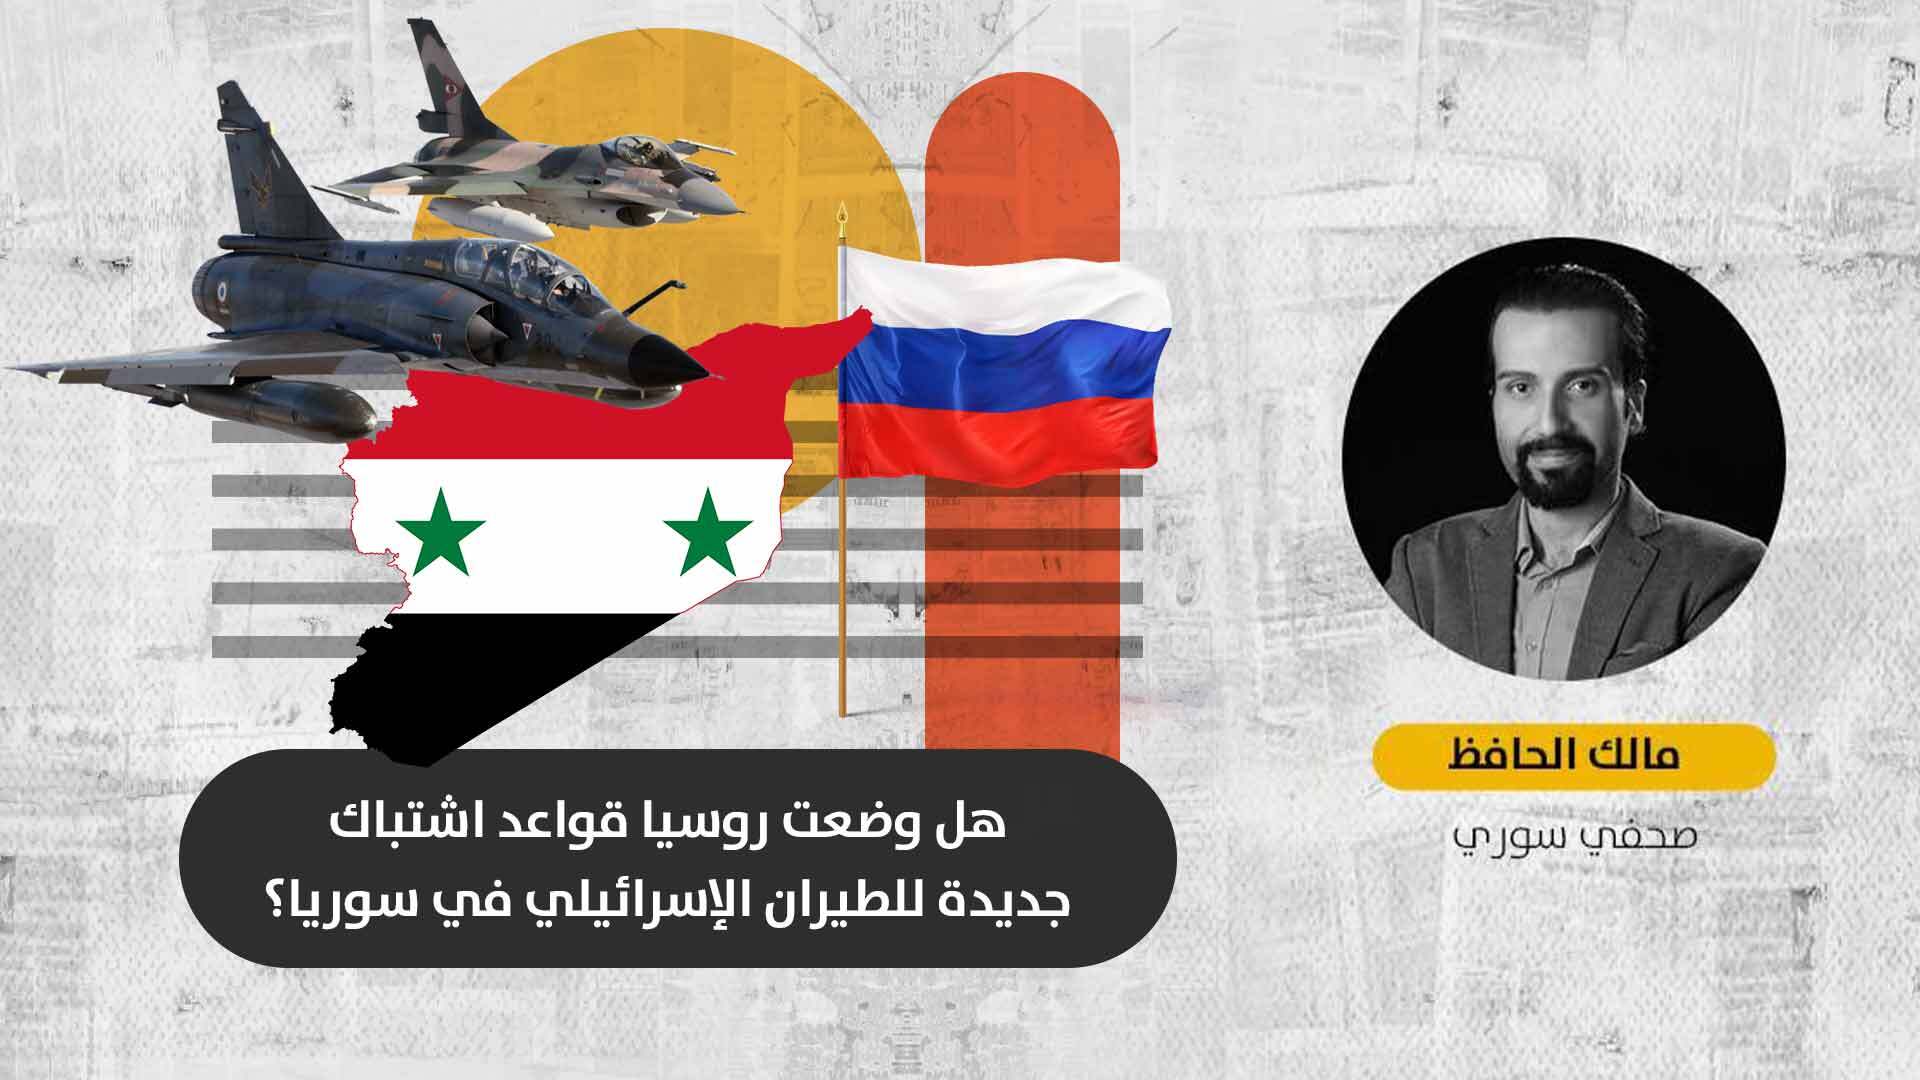 الغارات الإسرائيلية في سوريا: لماذا خرجت موسكو عن صمتها تجاه استهداف القوات النظامية والميلشيات الإيرانية؟